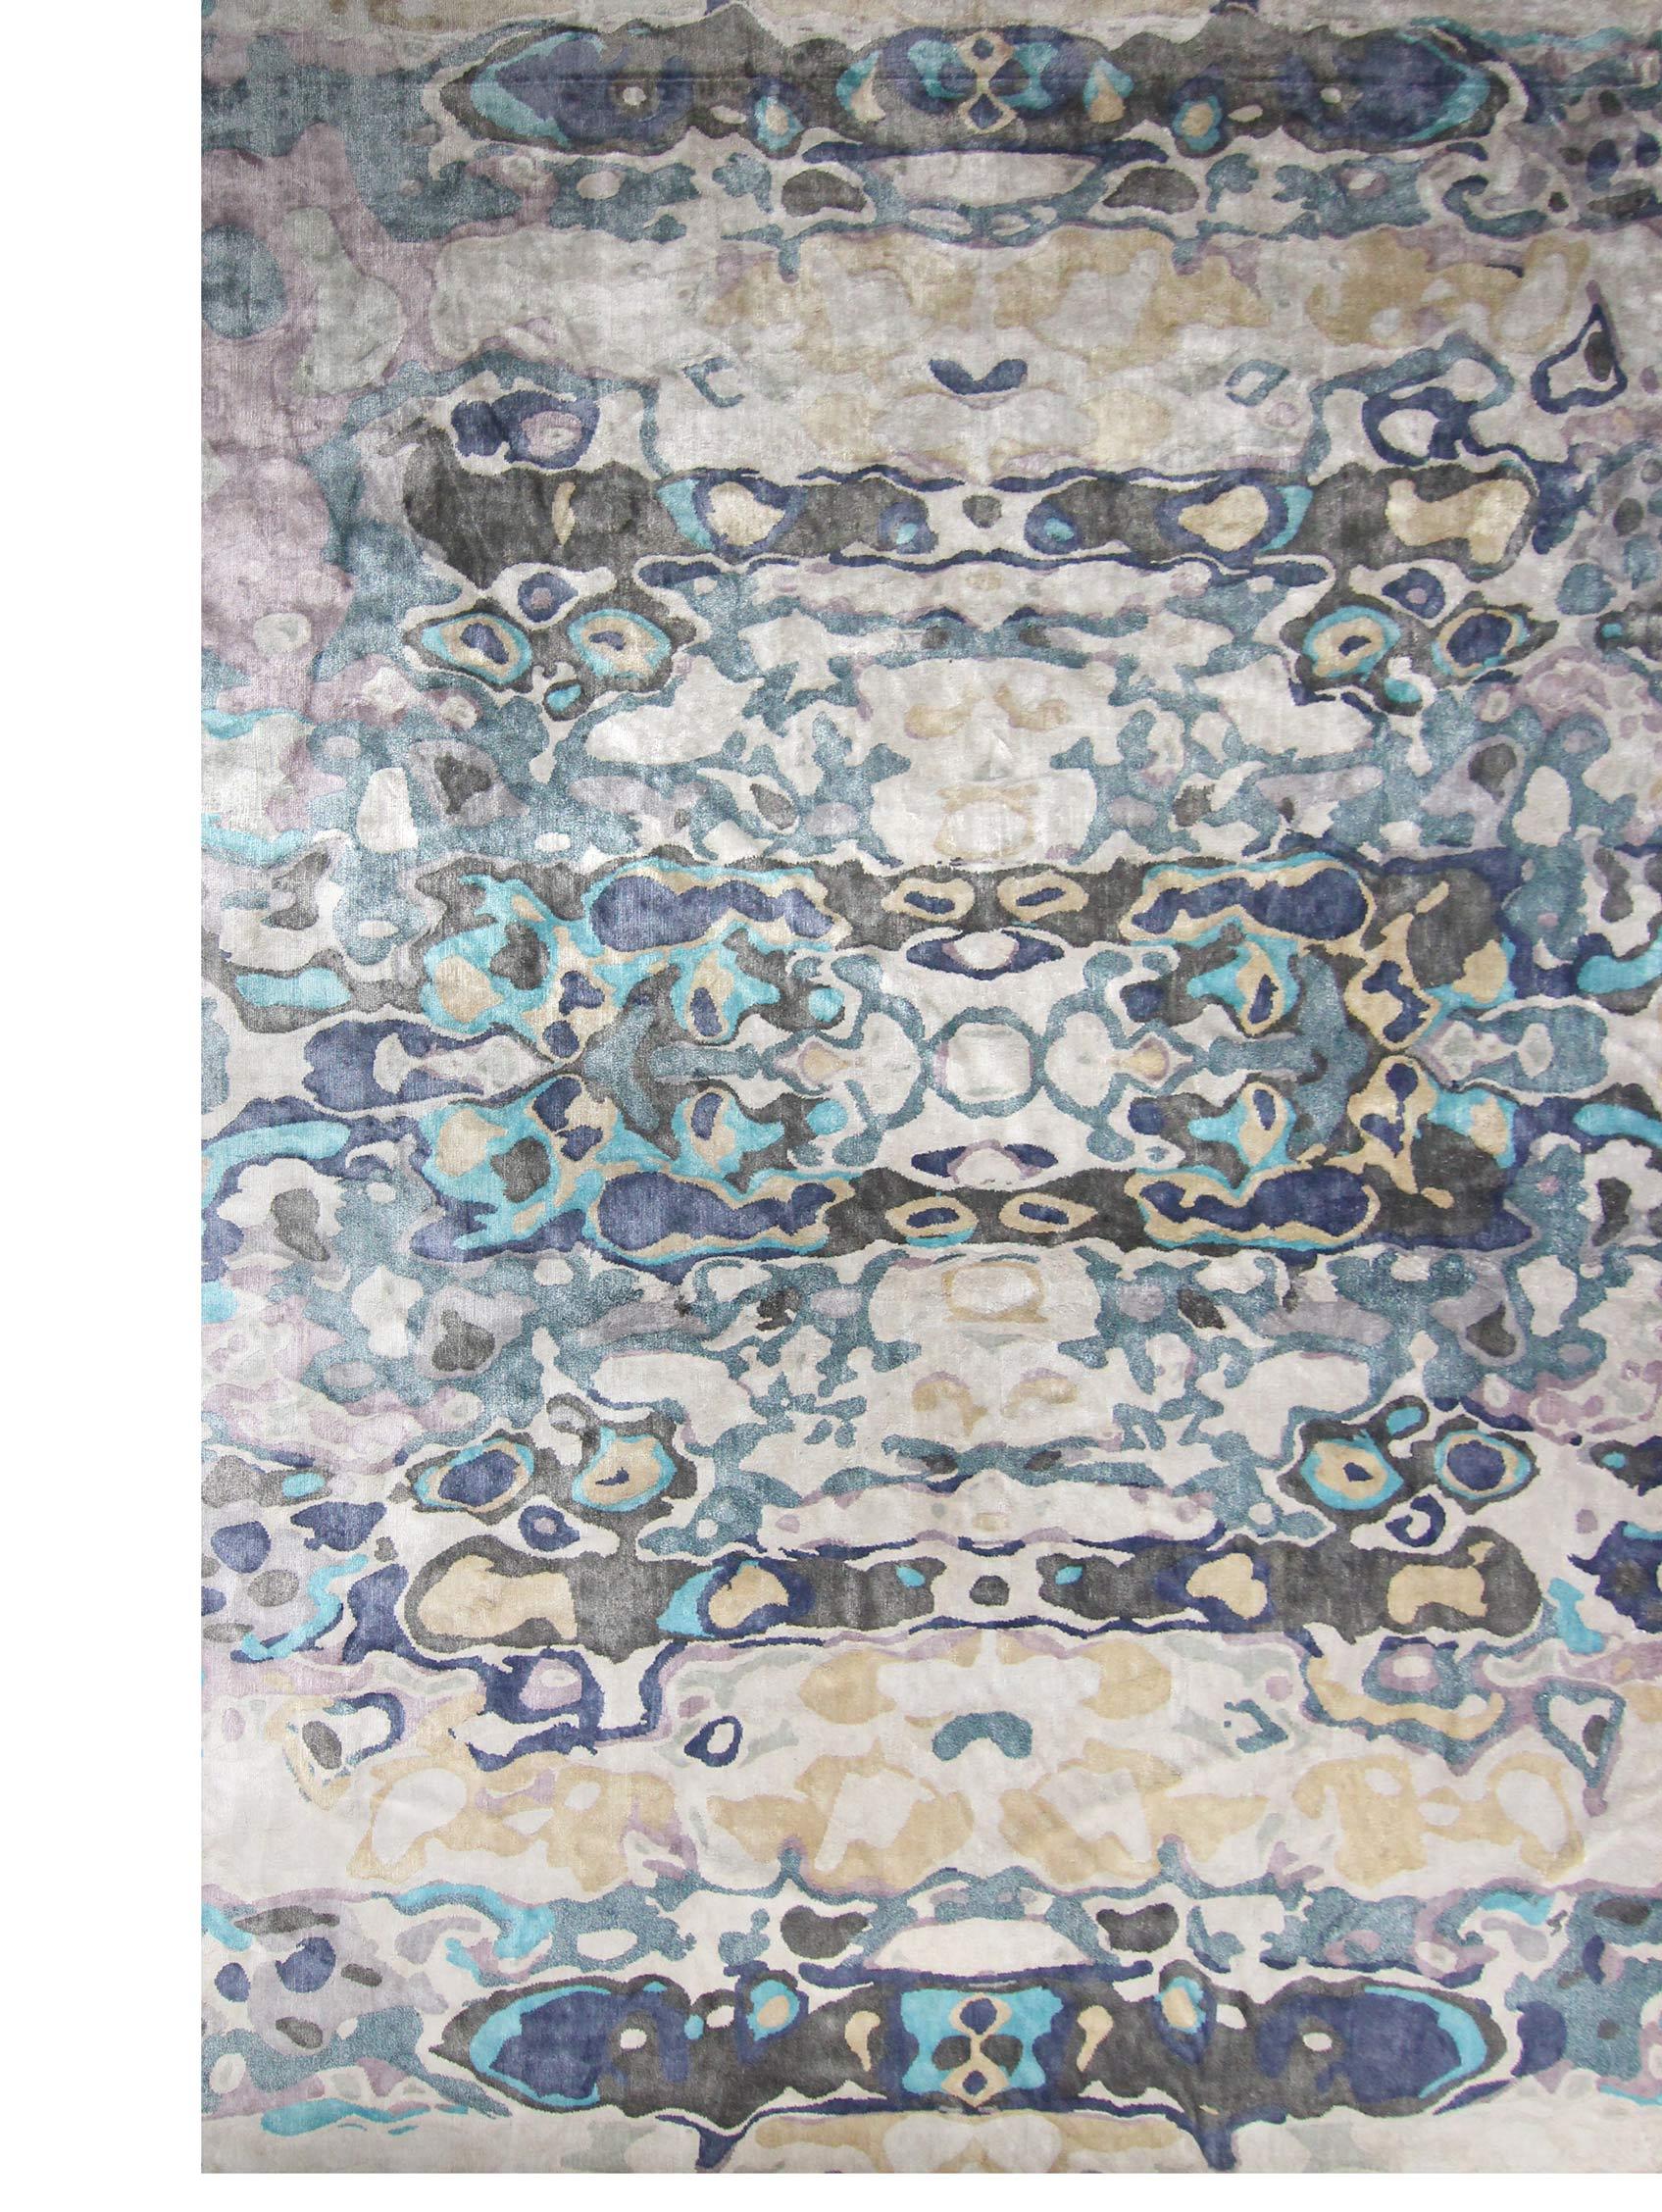 Expo Handgeknüpfter Teppich von Eskayel
Abmessungen: D 14' x H 9.4'
Florhöhe: 4 mm 
MATERIALIEN: 100% Bambus-Seide.

Die handgeknüpften Teppiche von Eskayel werden auf Bestellung gewebt und können in verschiedenen Größen, Farben, MATERIALEN und